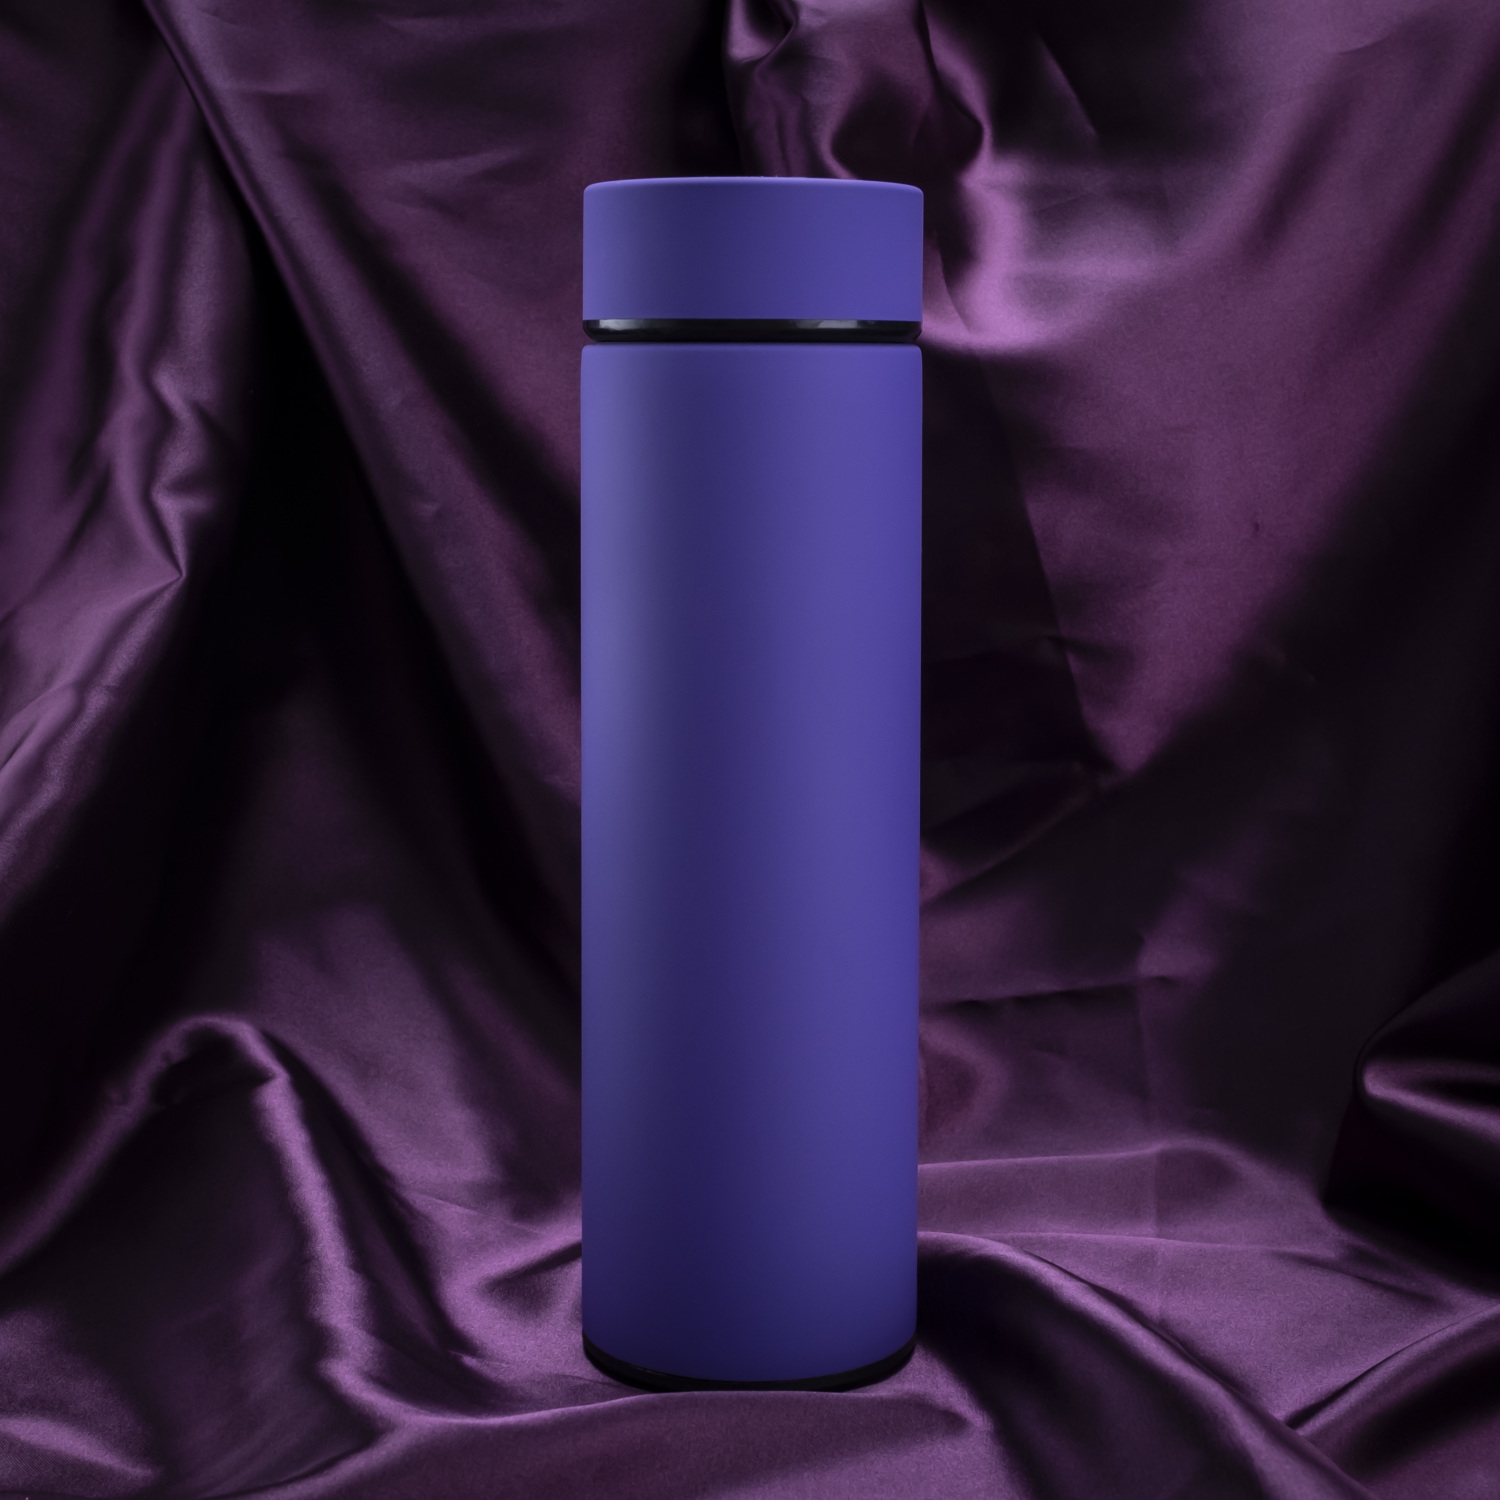 Термос Reactor софт-тач с датчиком температуры (фиолетовый), фиолетовый, металл, soft touch